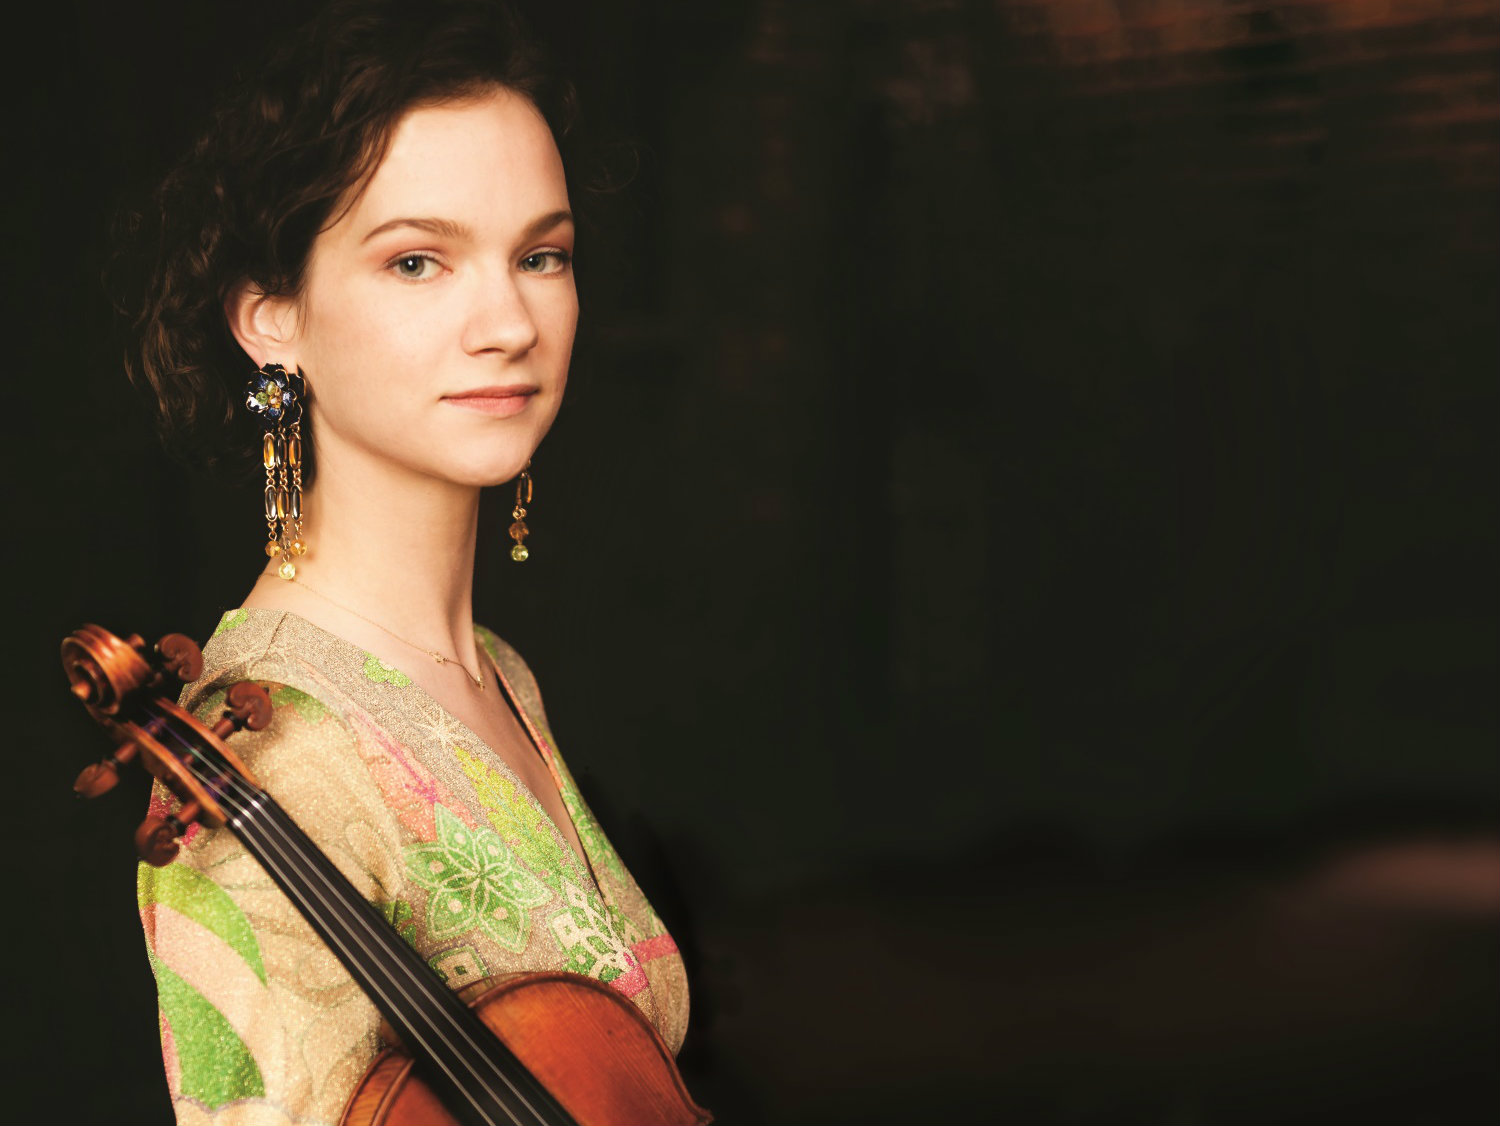 Photo: Violinist Hilary Hahn